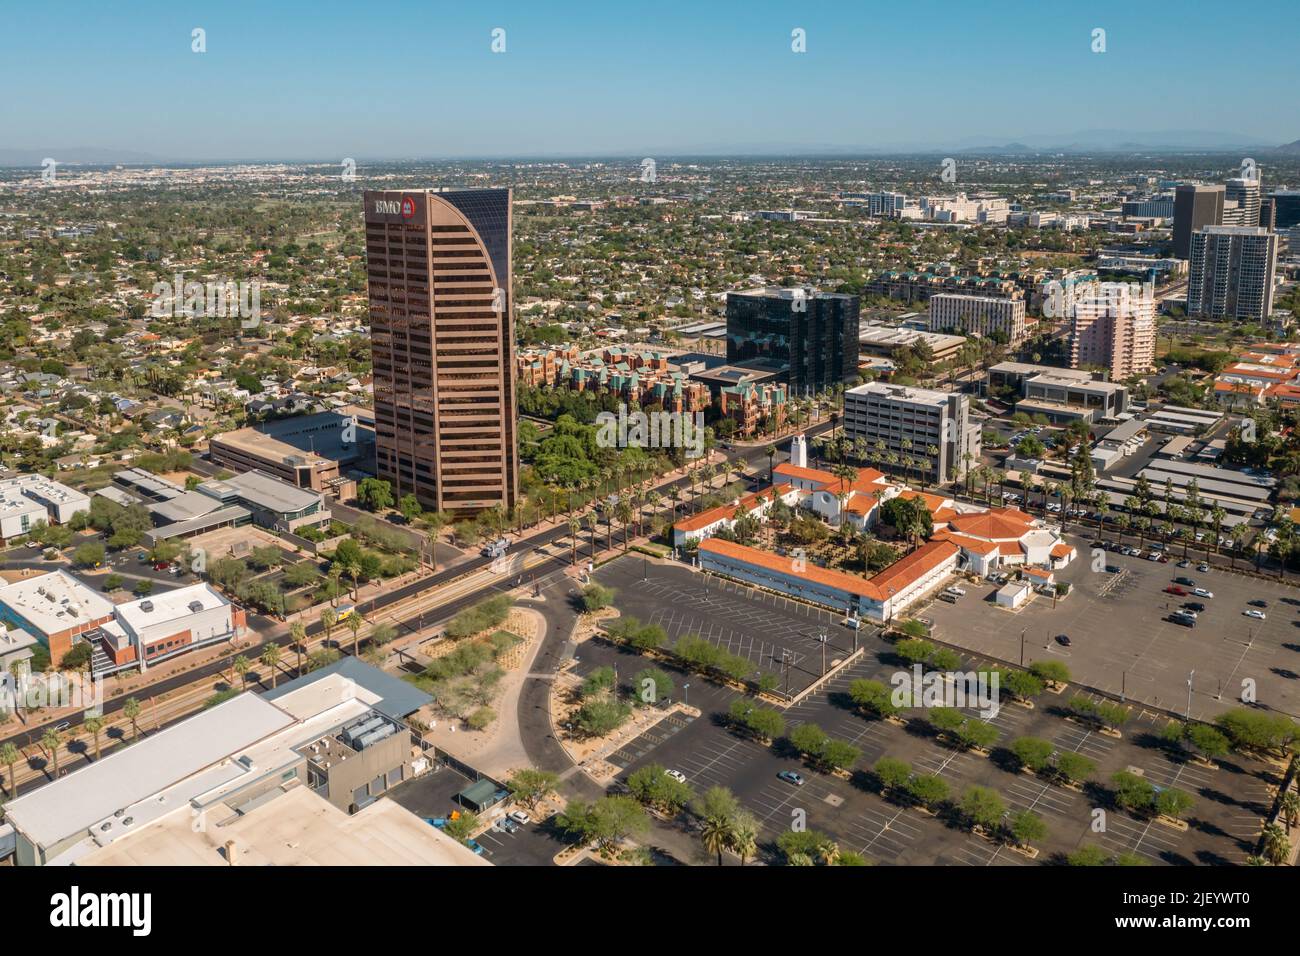 Vista aérea de la Torre BMO y la Iglesia Metodista Unida Central en Phoenix, Arizona, EE.UU. Foto de stock